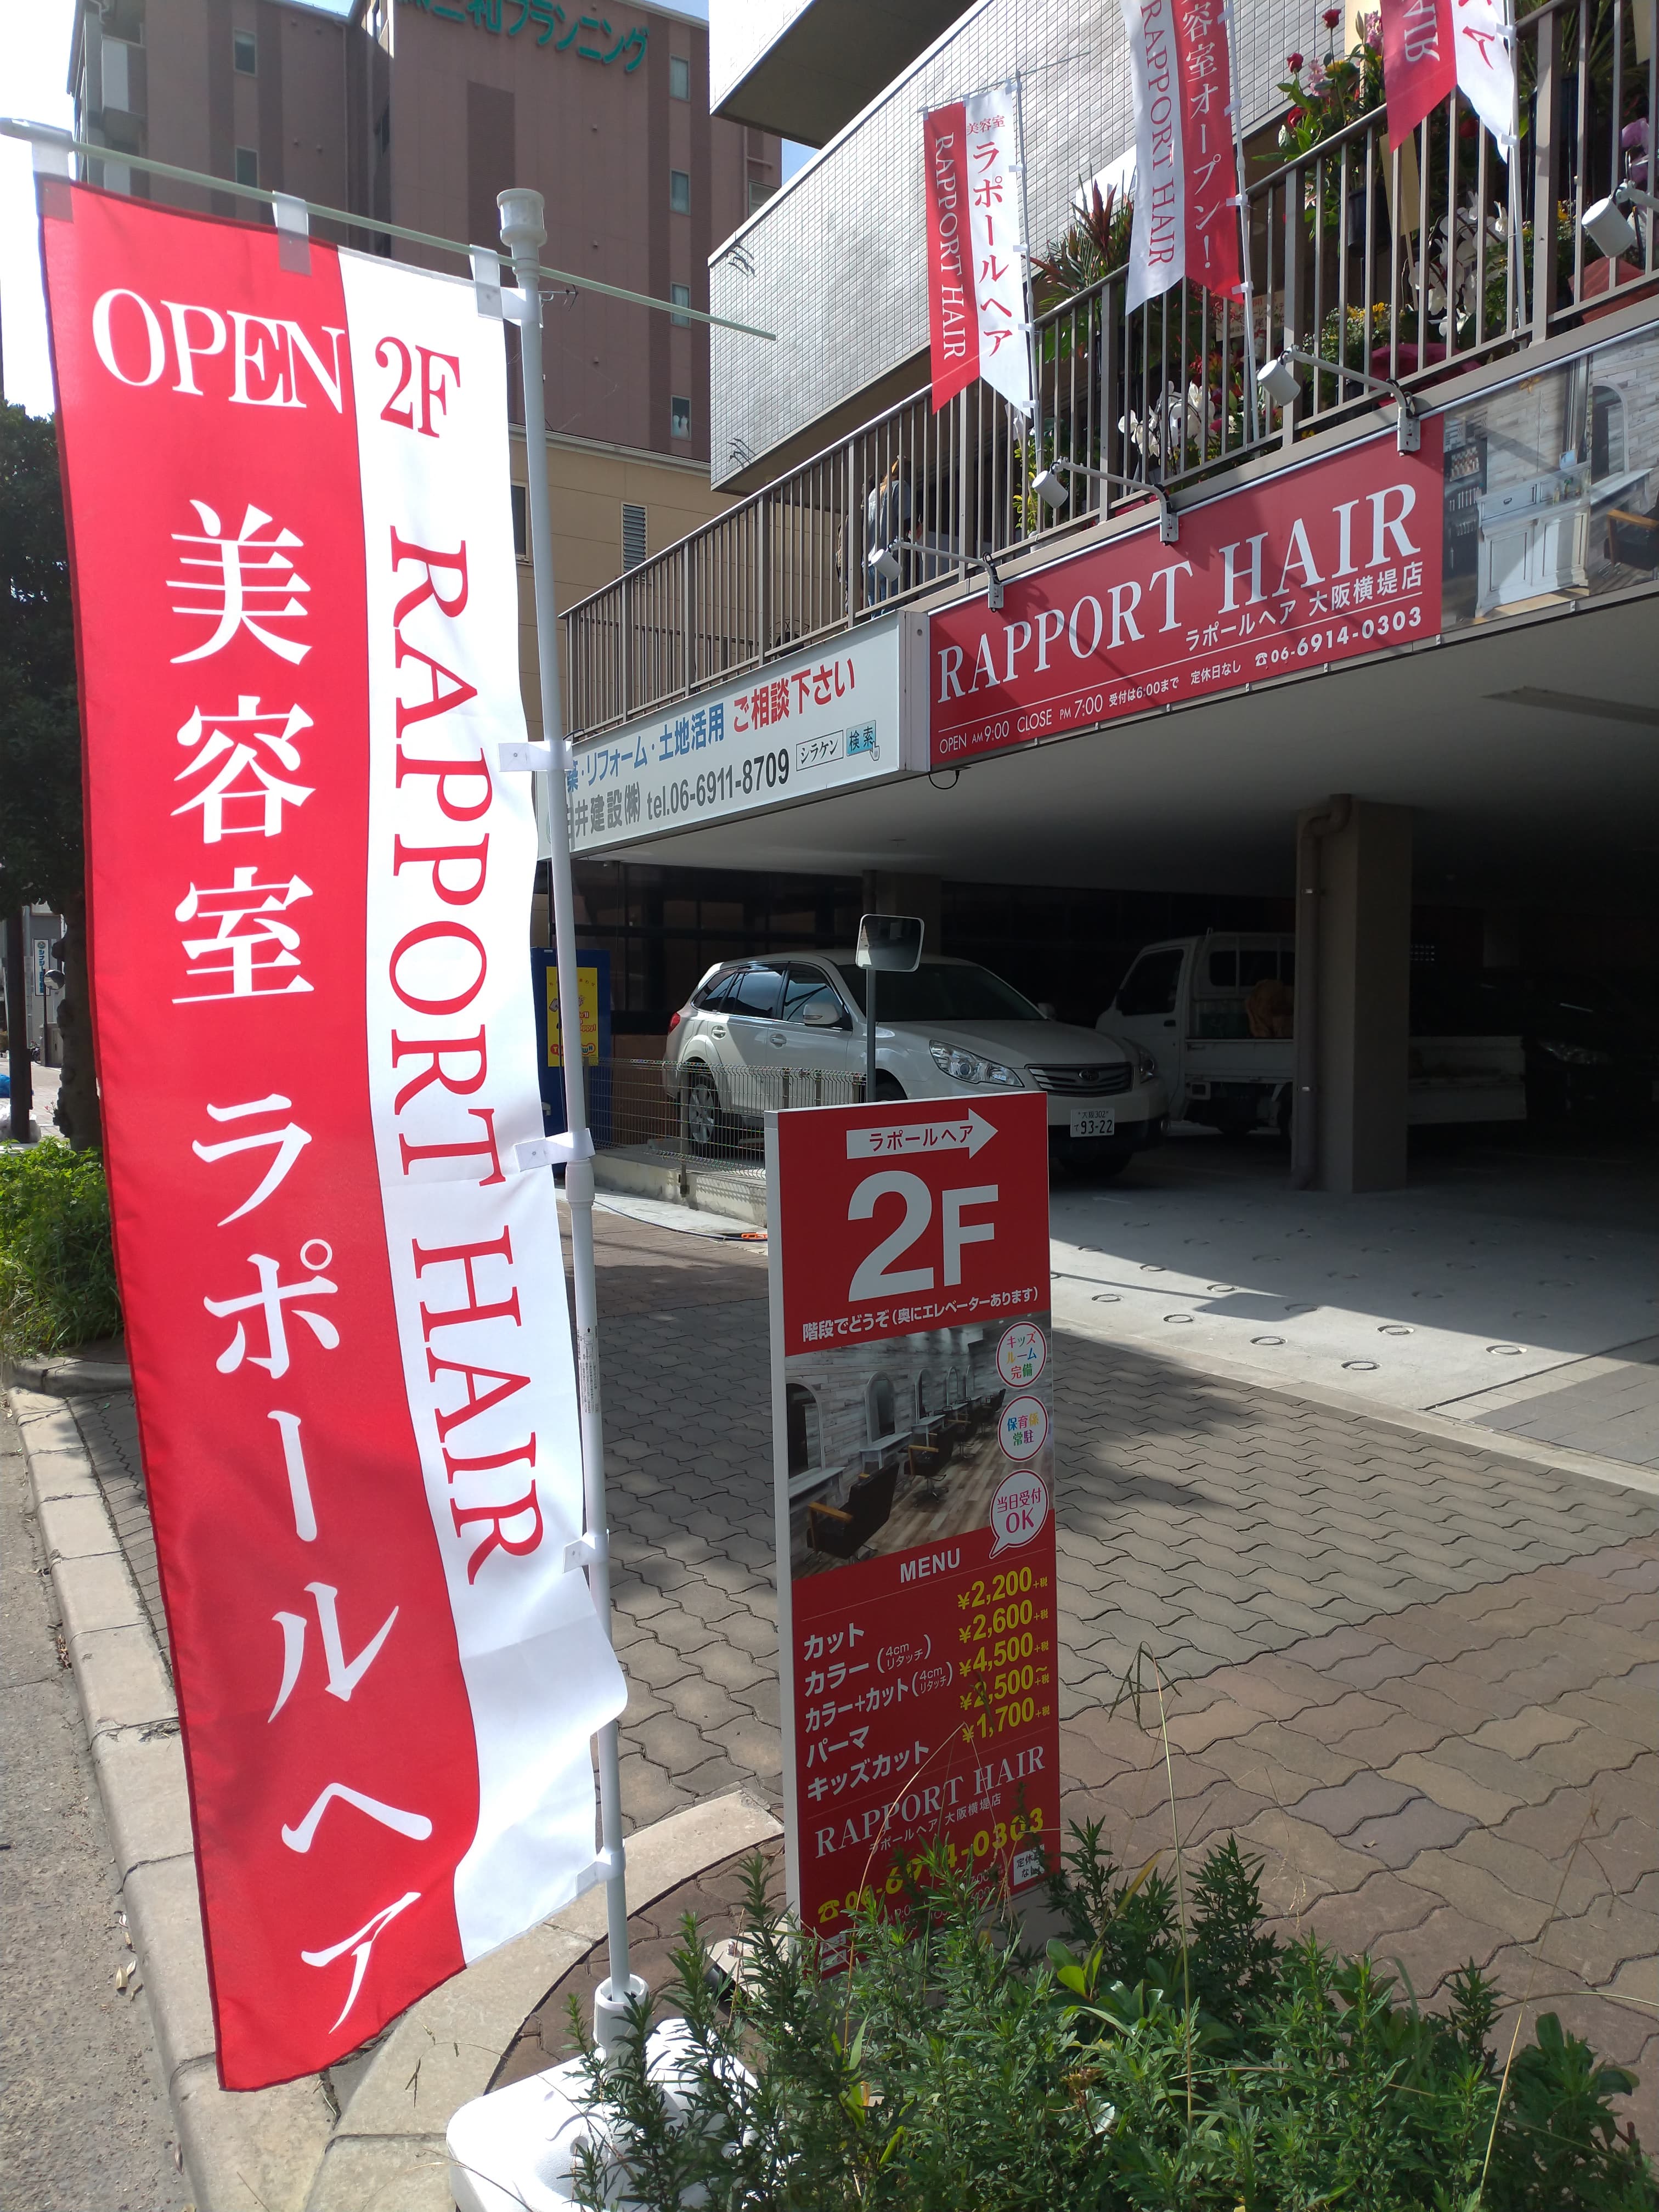 祝・ラポールヘア 大阪横堤店 Open！